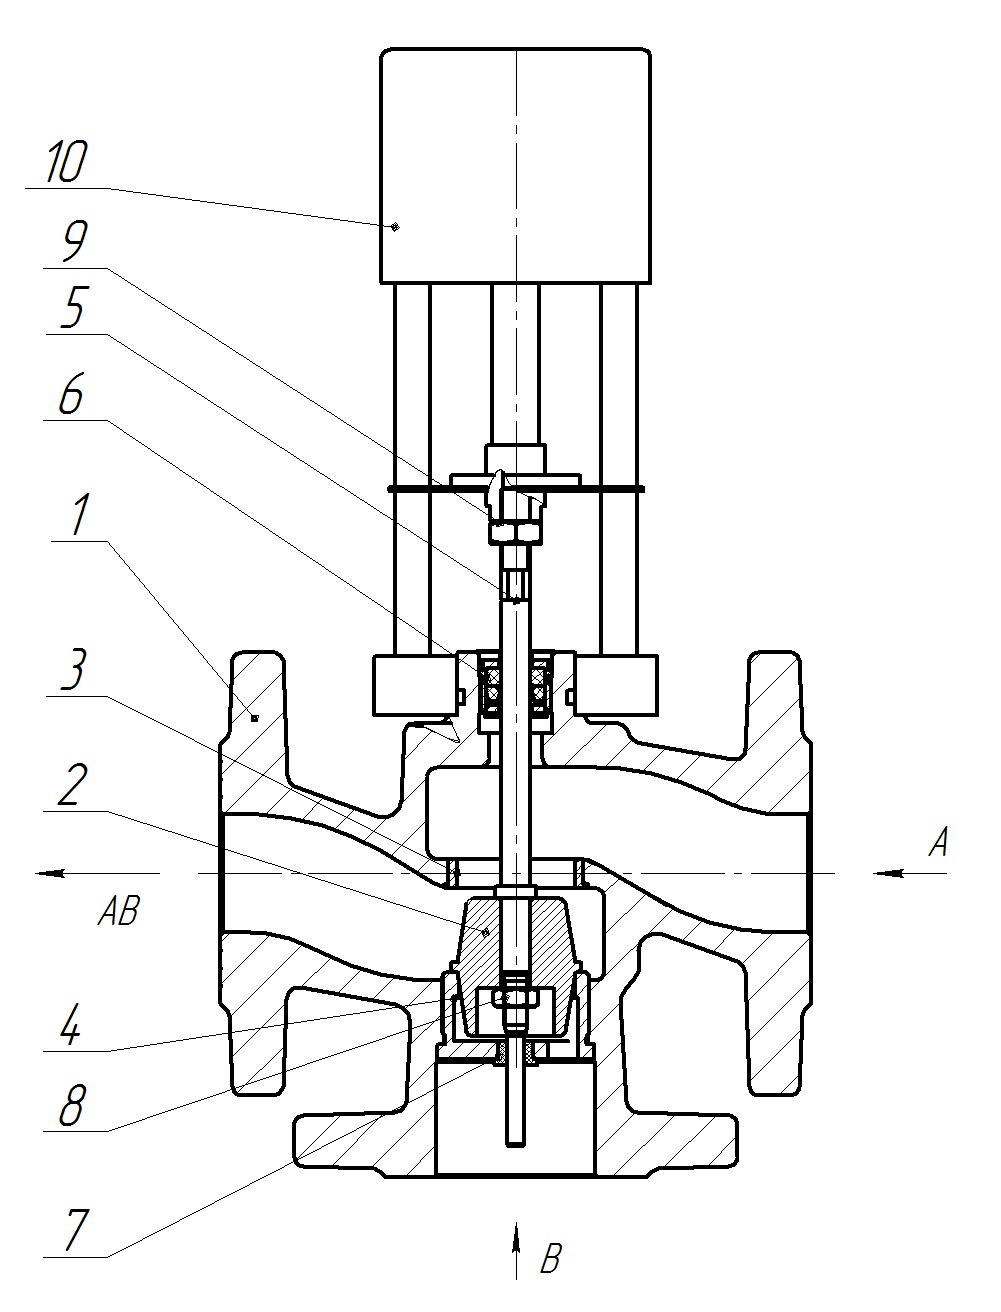 Клапан регулирующий трехходовой разделительный DN.ru 23ч901нж Ду40 Ру16 Kvs16 серый чугун СЧ20, фланцевый, Tmax до 150°С с электроприводом Катрабел TW-500-XD220